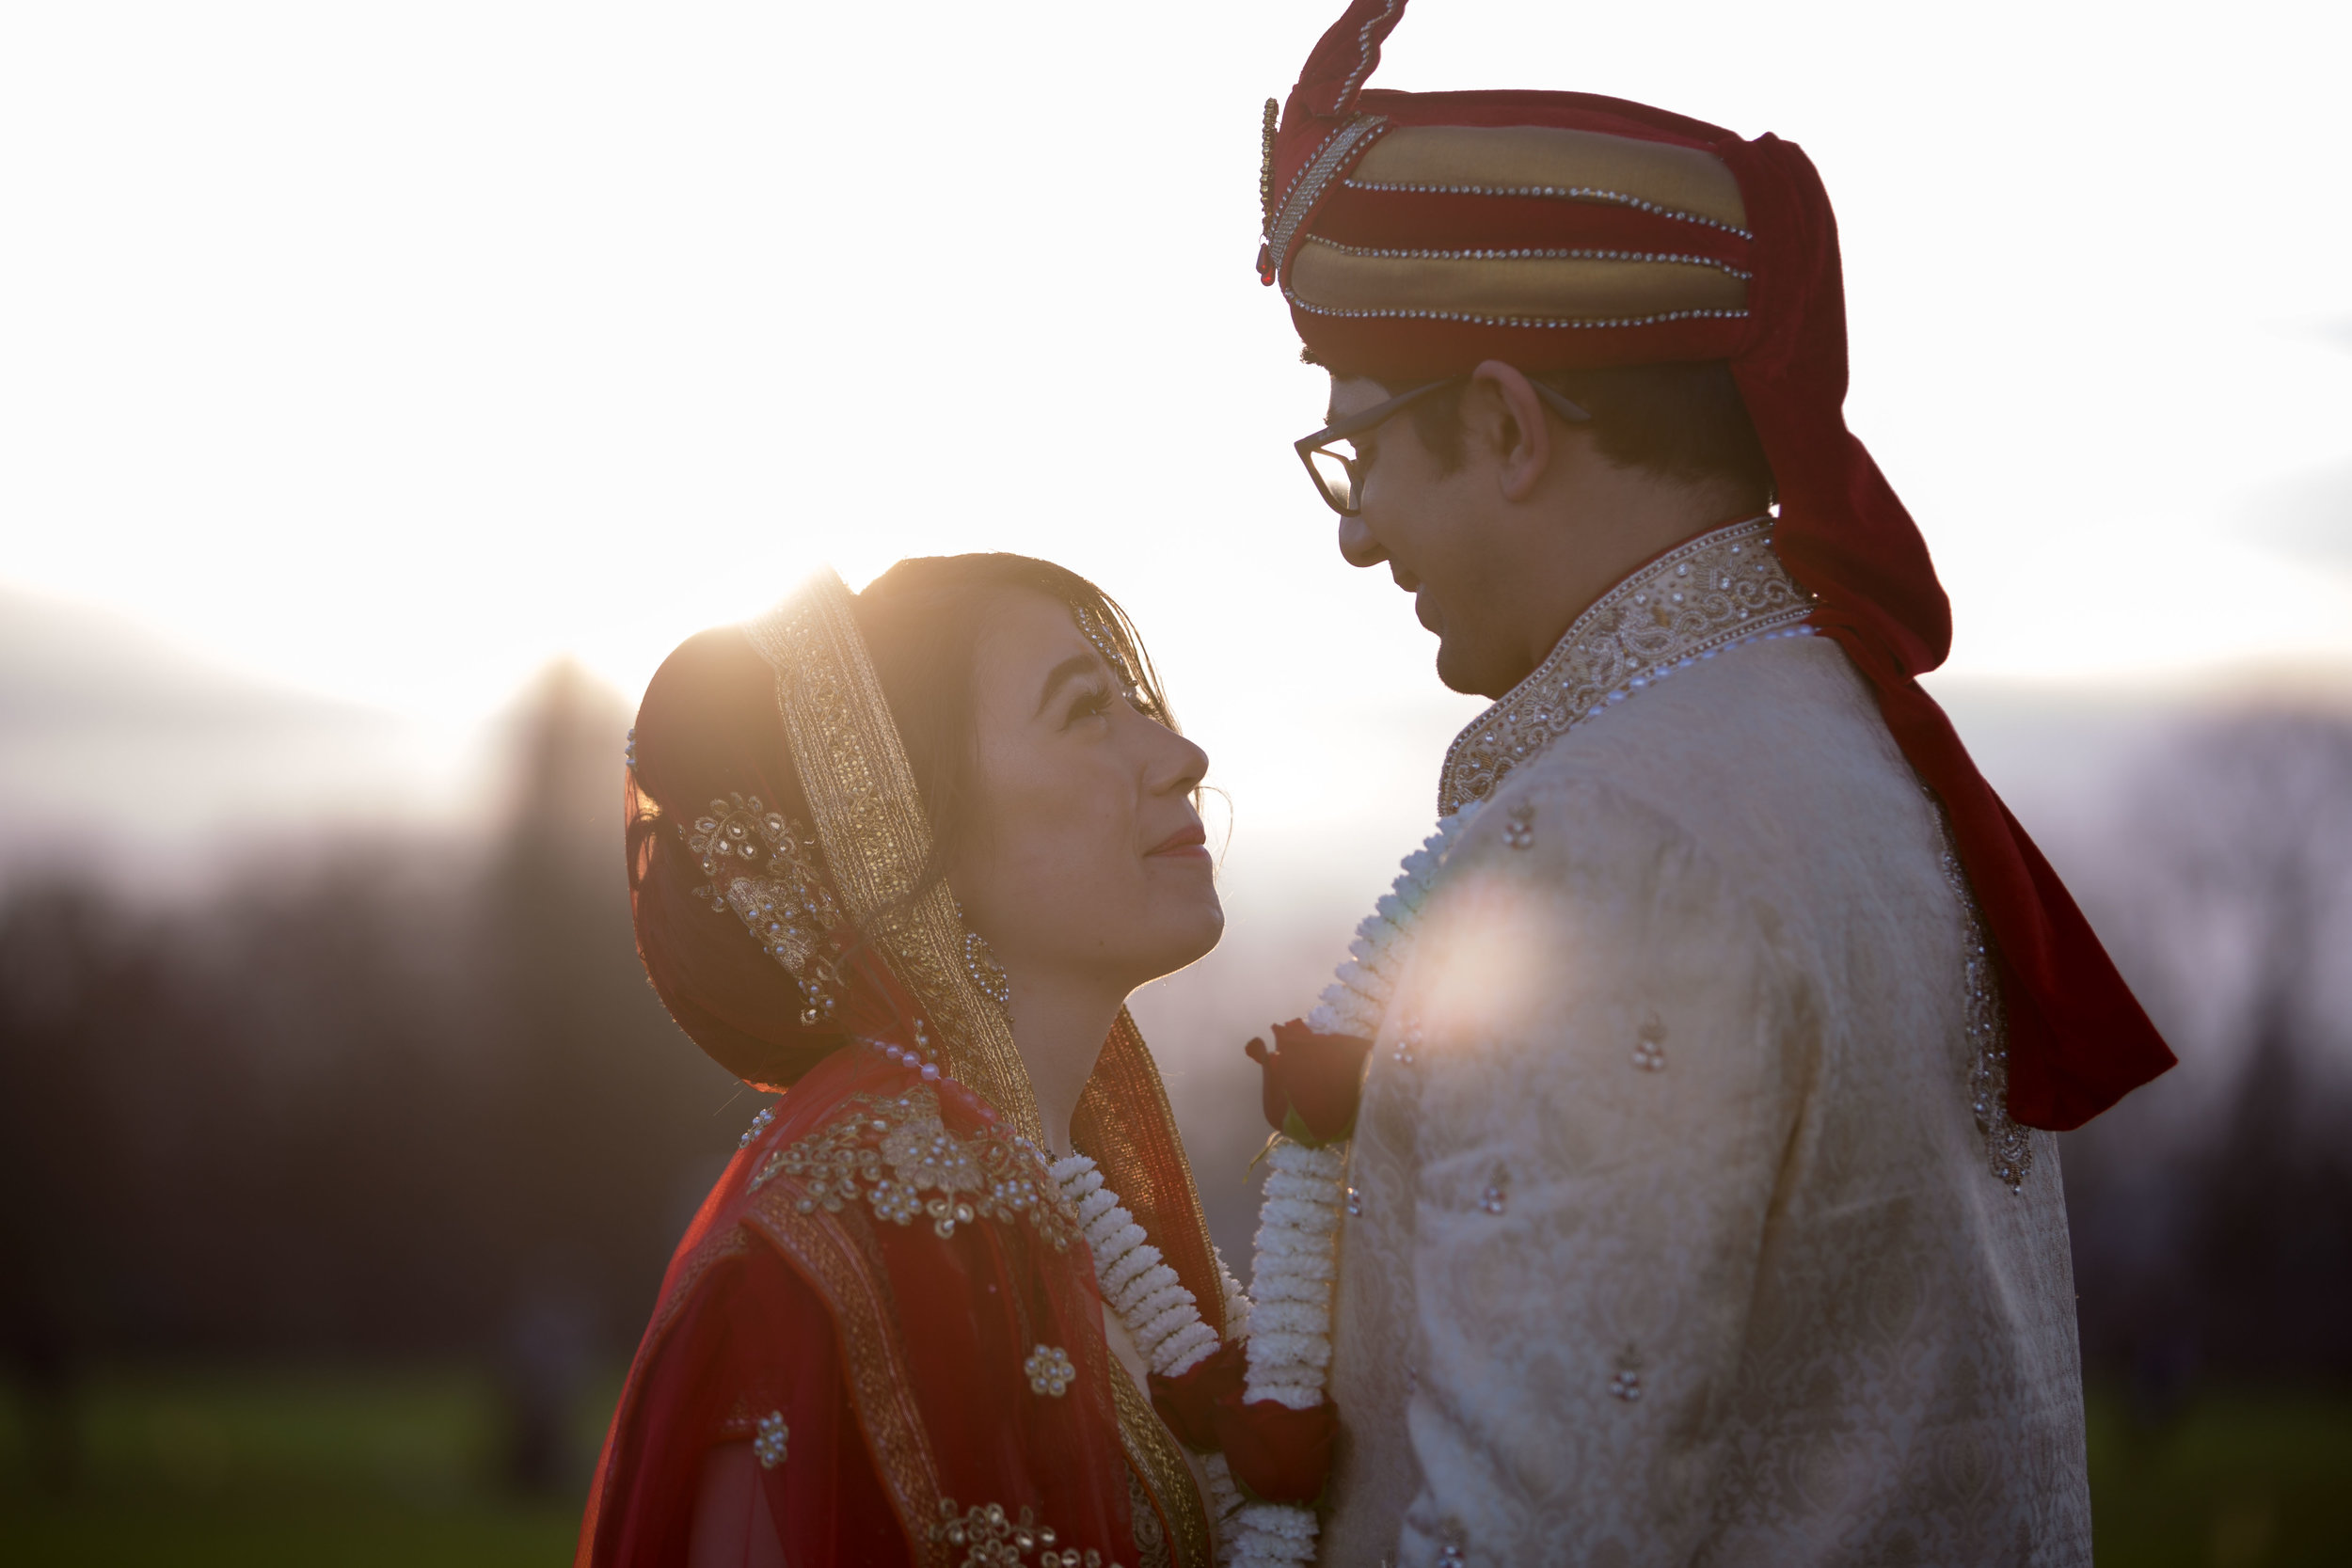 asian-Hindu-wedding-photographer-birmingham-abbey-park-leicester-natalia-smith-photography-3.jpg